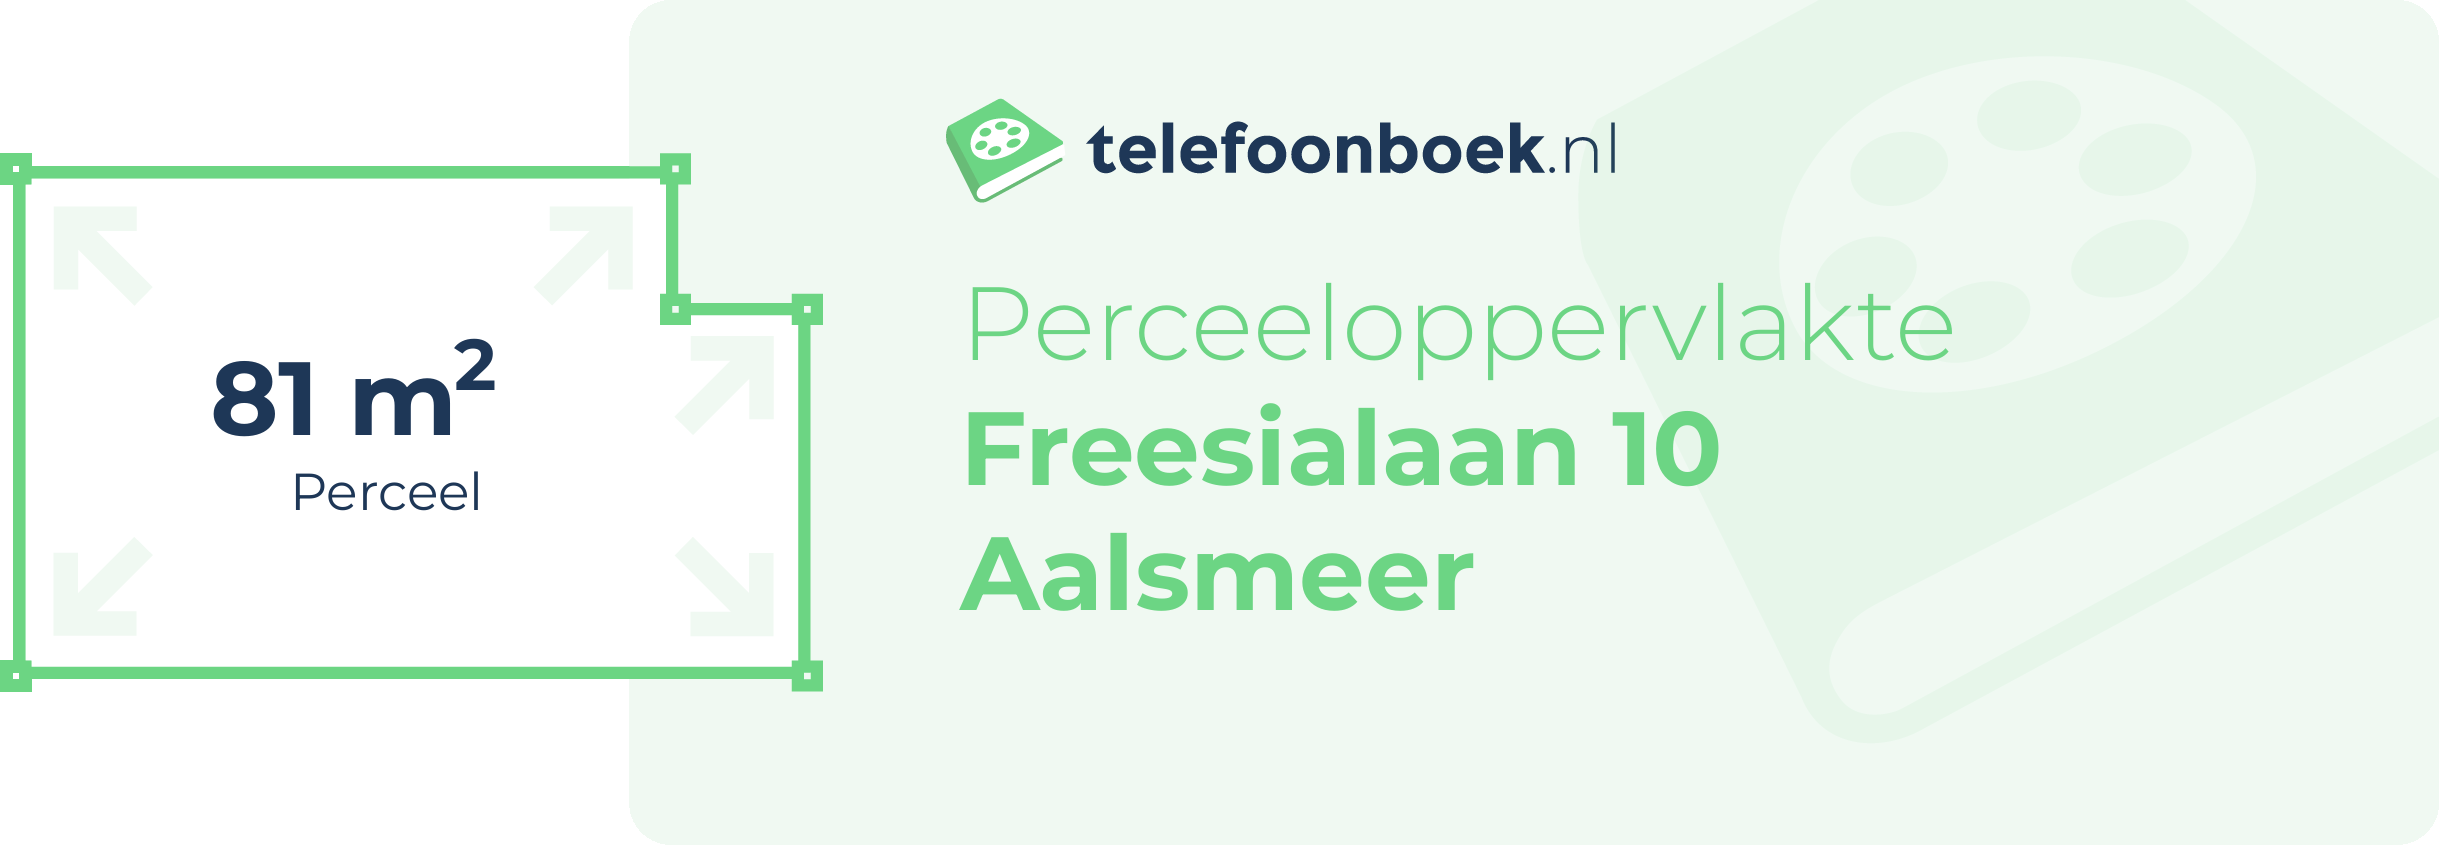 Perceeloppervlakte Freesialaan 10 Aalsmeer